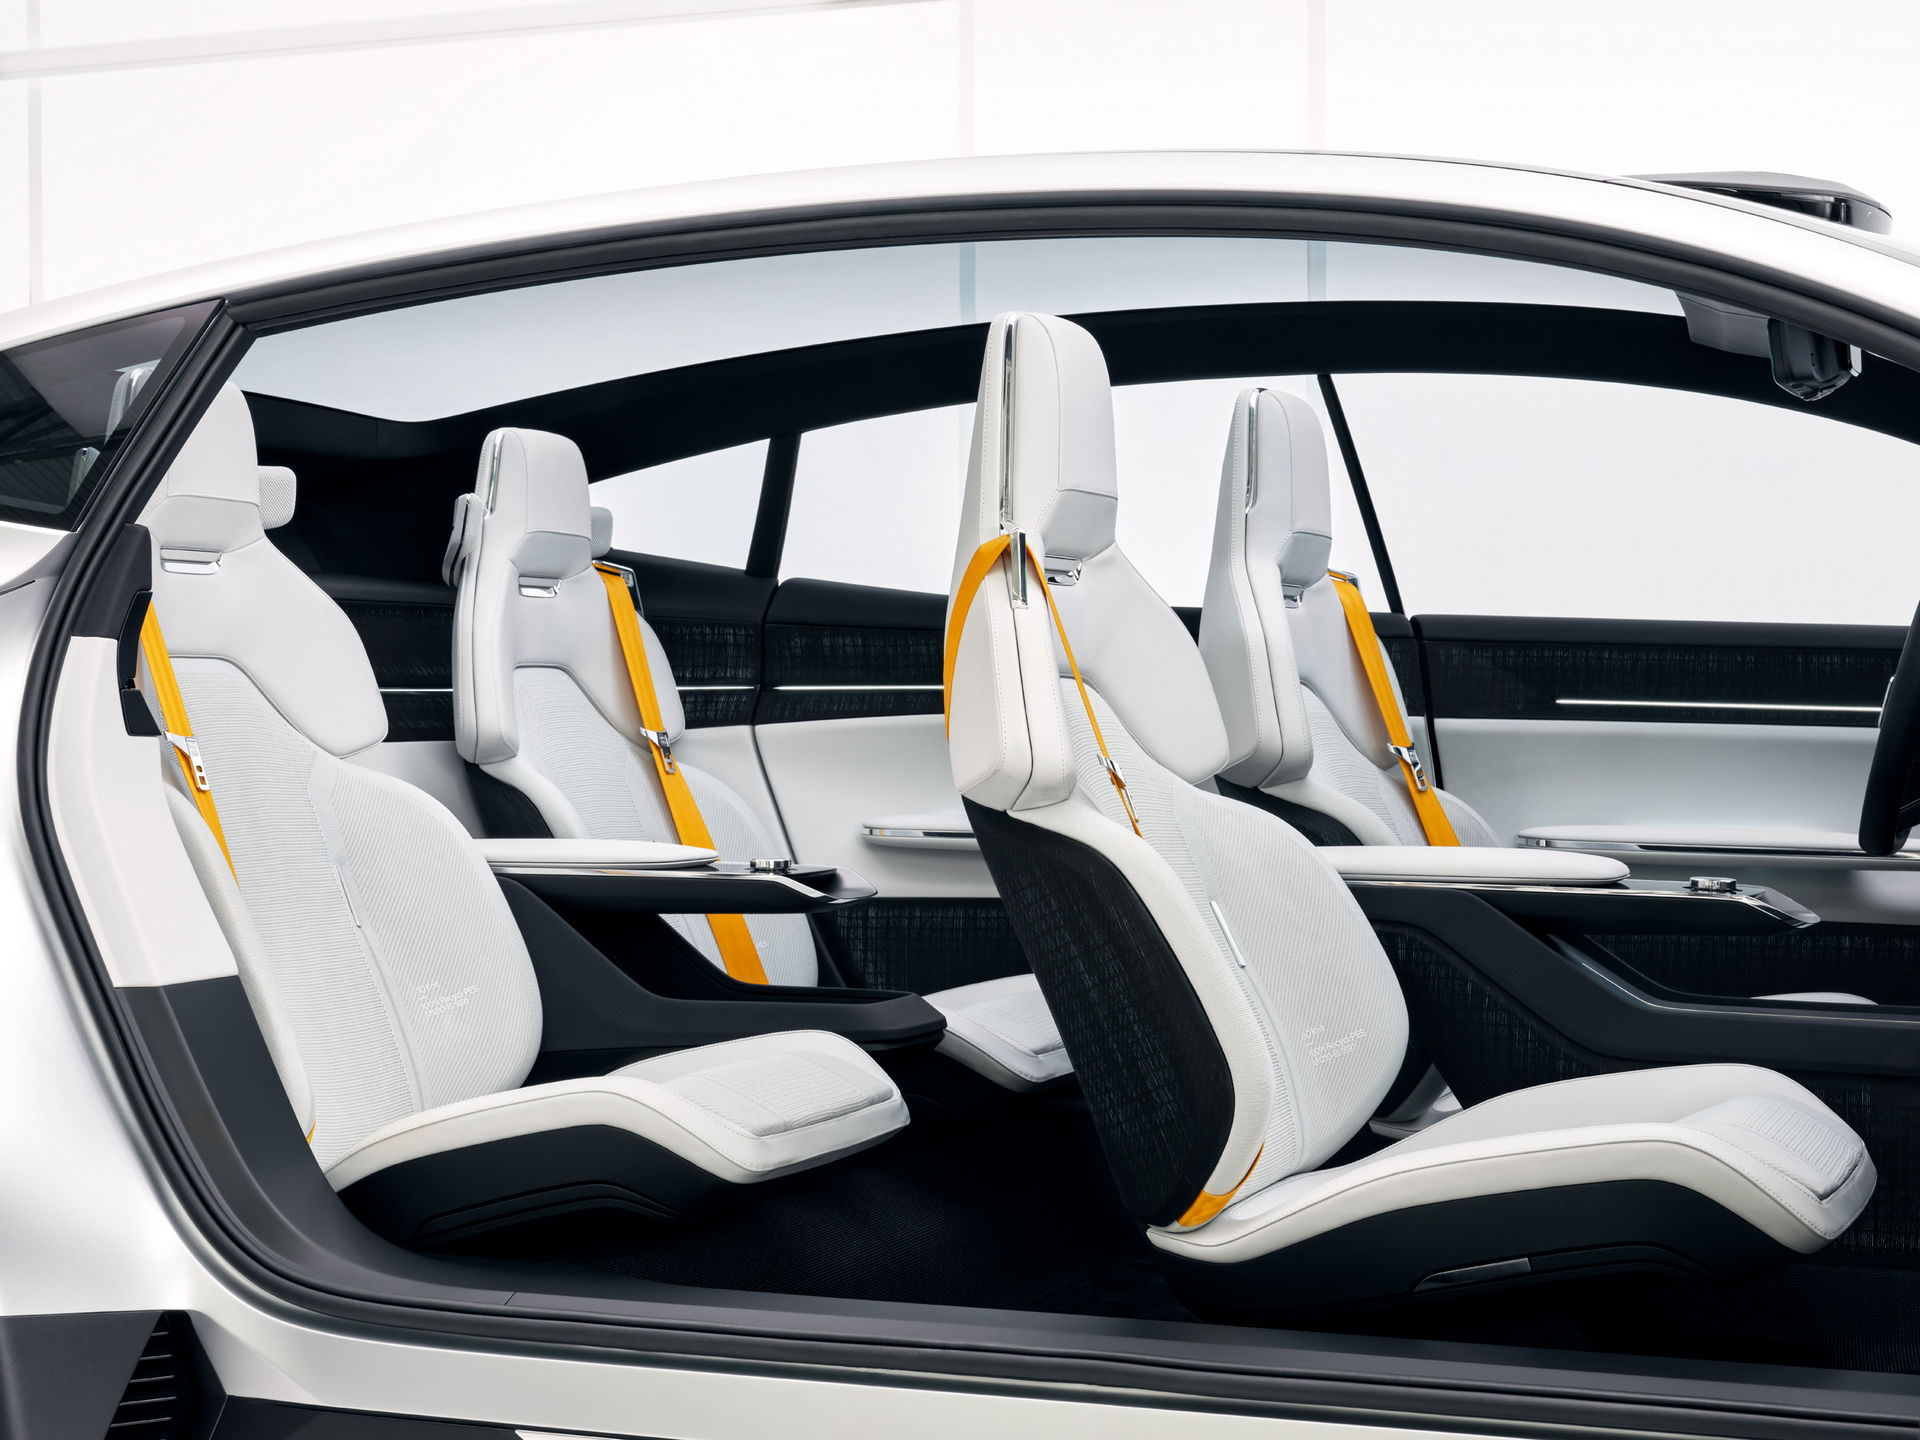 SUV siêu mạnh mới của Volvo: Thiết kế đậm chất tương lai, mượt như coupe - Ảnh 4.